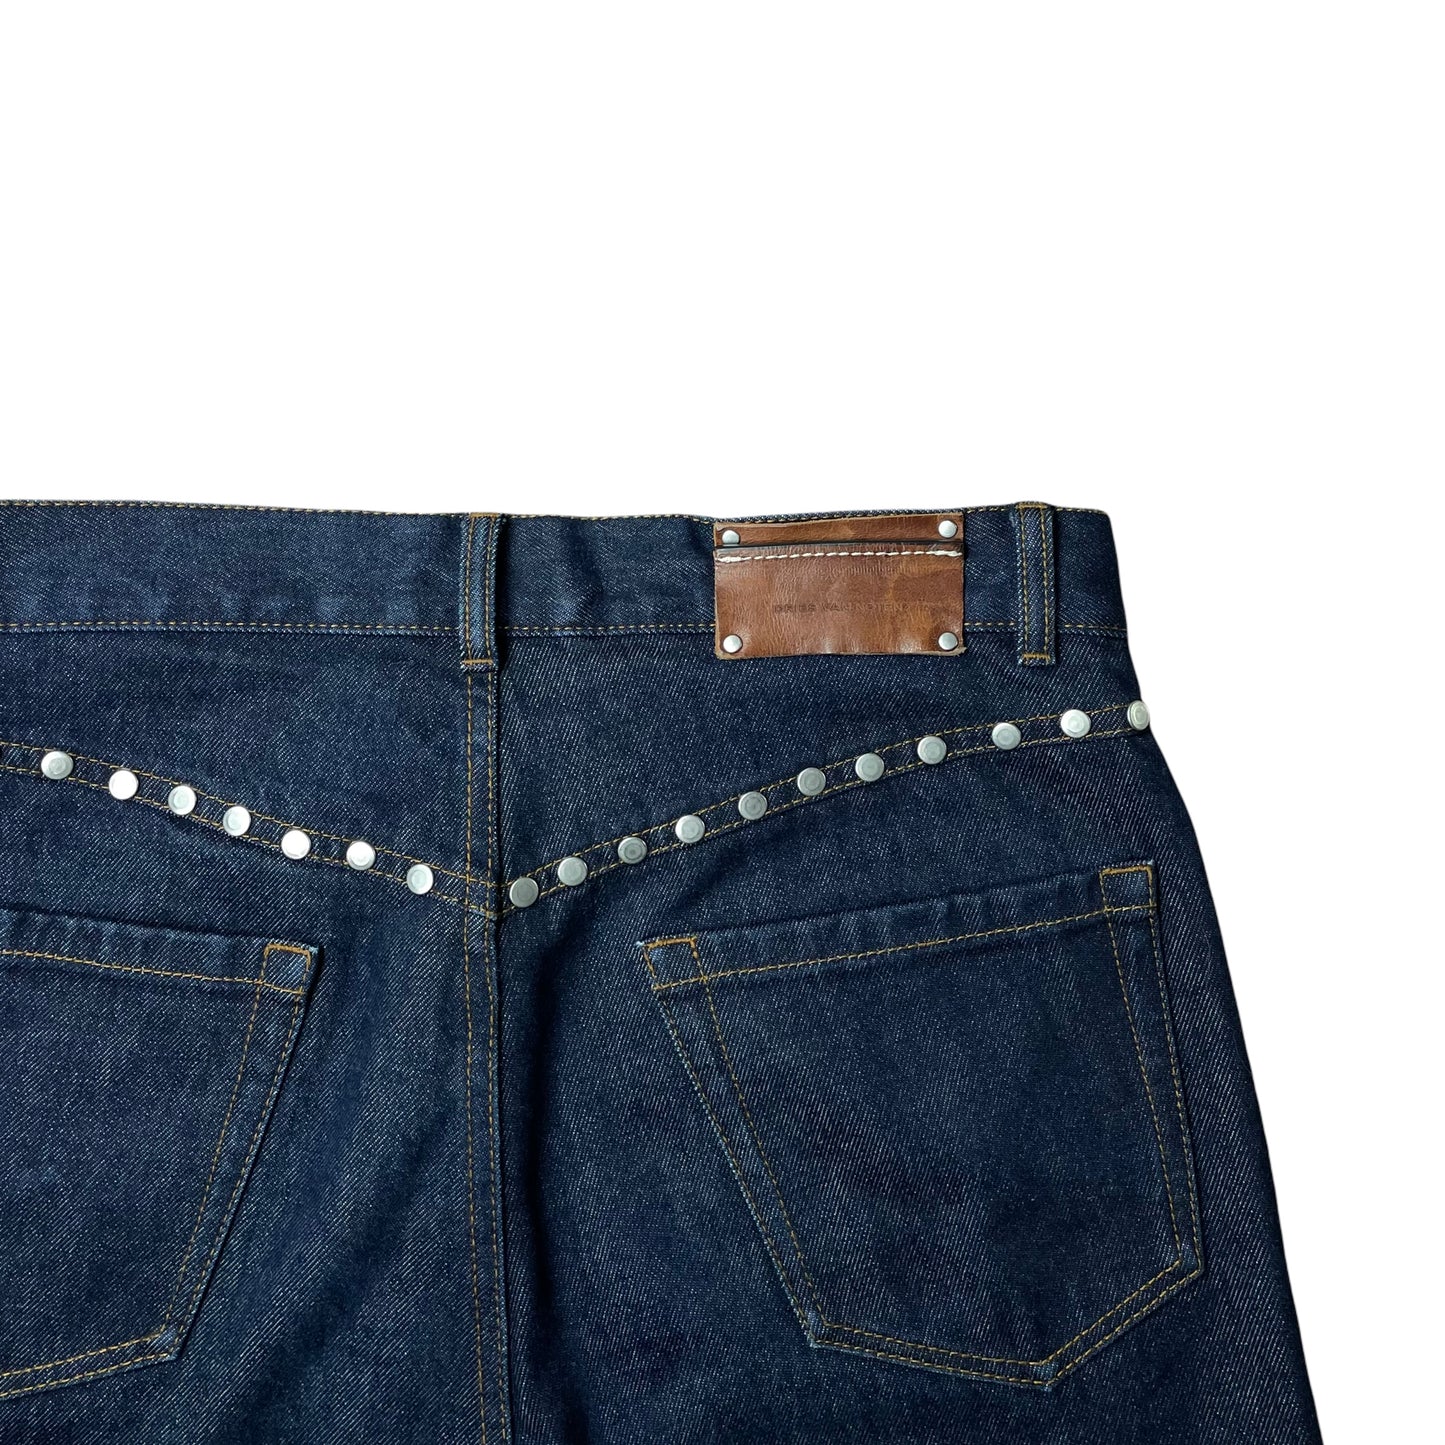 Dries Van Noten Studded Jeans - FW18